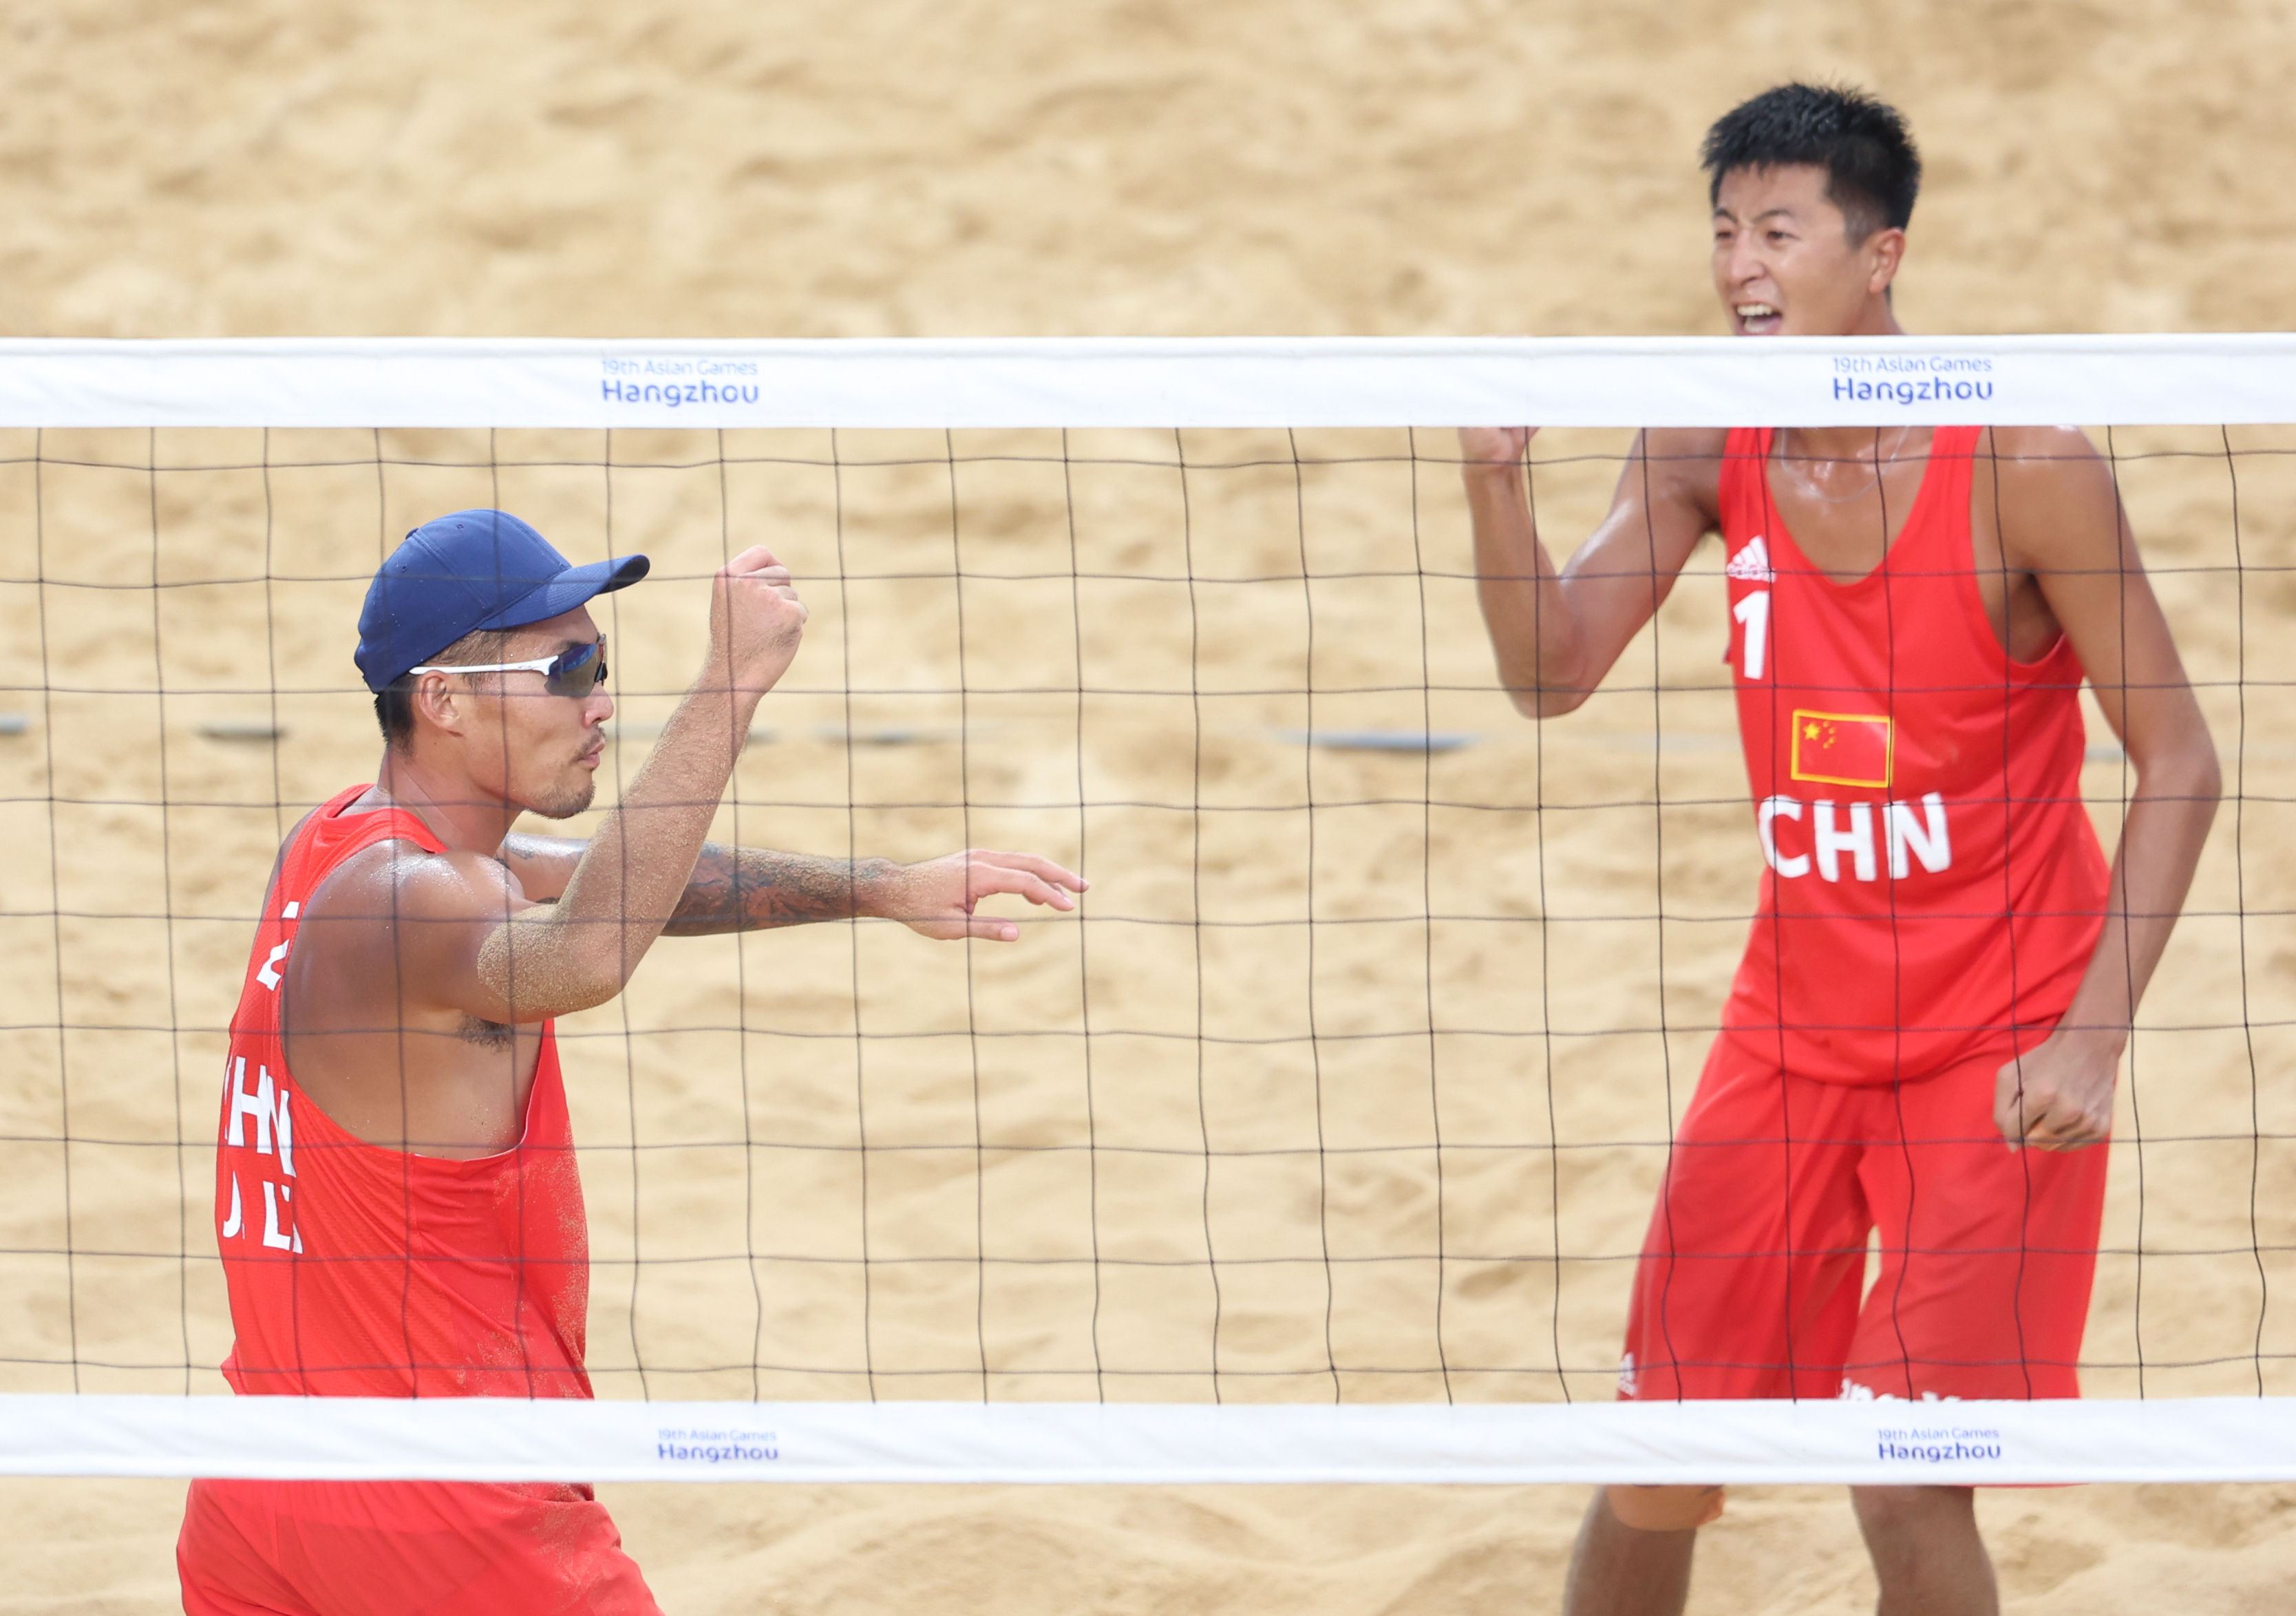 沙滩排球——男子小组赛:中国组合王延伟/李杰胜哈萨克斯坦组合